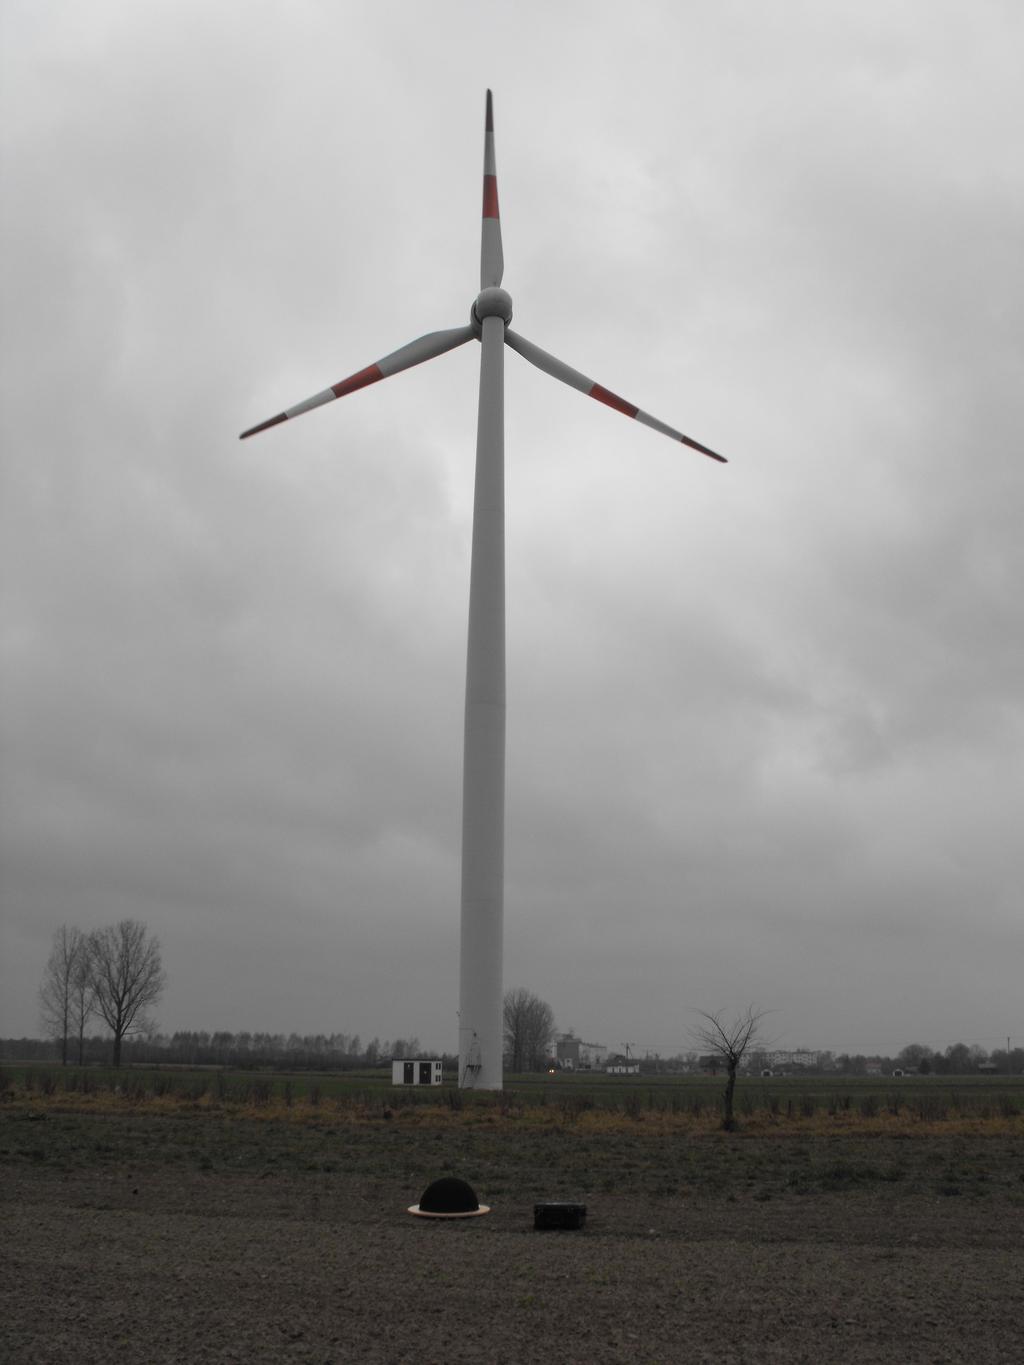 Schemat poglądowy rozmieszczenia elementów układu pomiarowego względem badanej turbiny wiatrowej Schematic diagram of the measuring system element arrangement in relation to the tested wind turbine